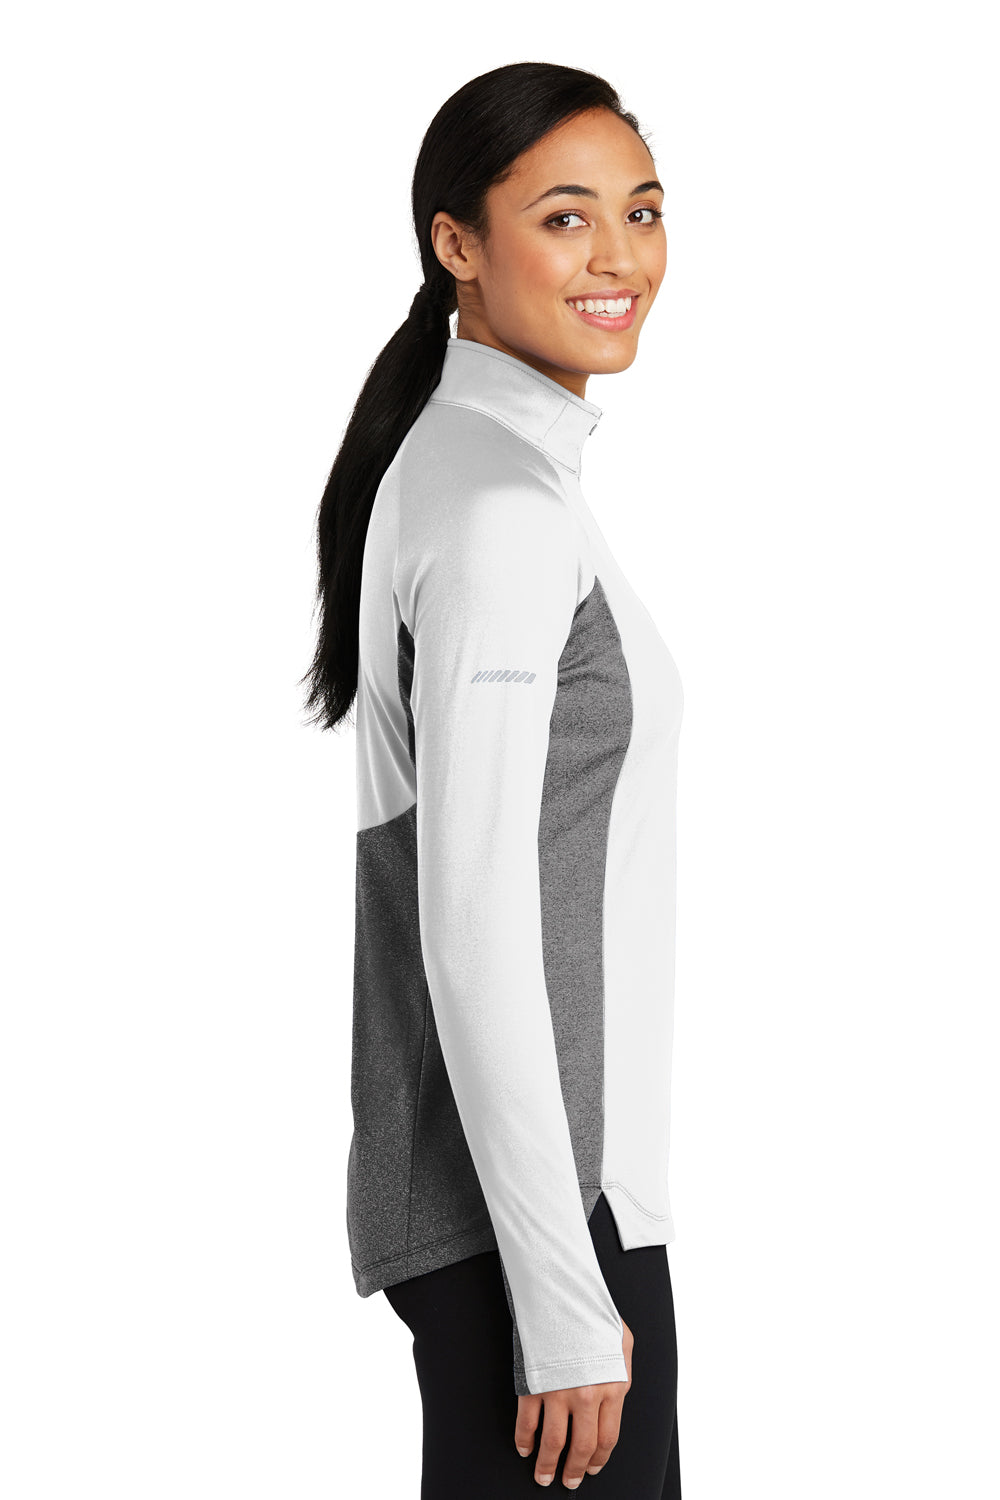 Sport-Tek LST854 Womens Sport-Wick Moisture Wicking 1/4 Zip Sweatshirt White/Heather Charcoal Grey Side